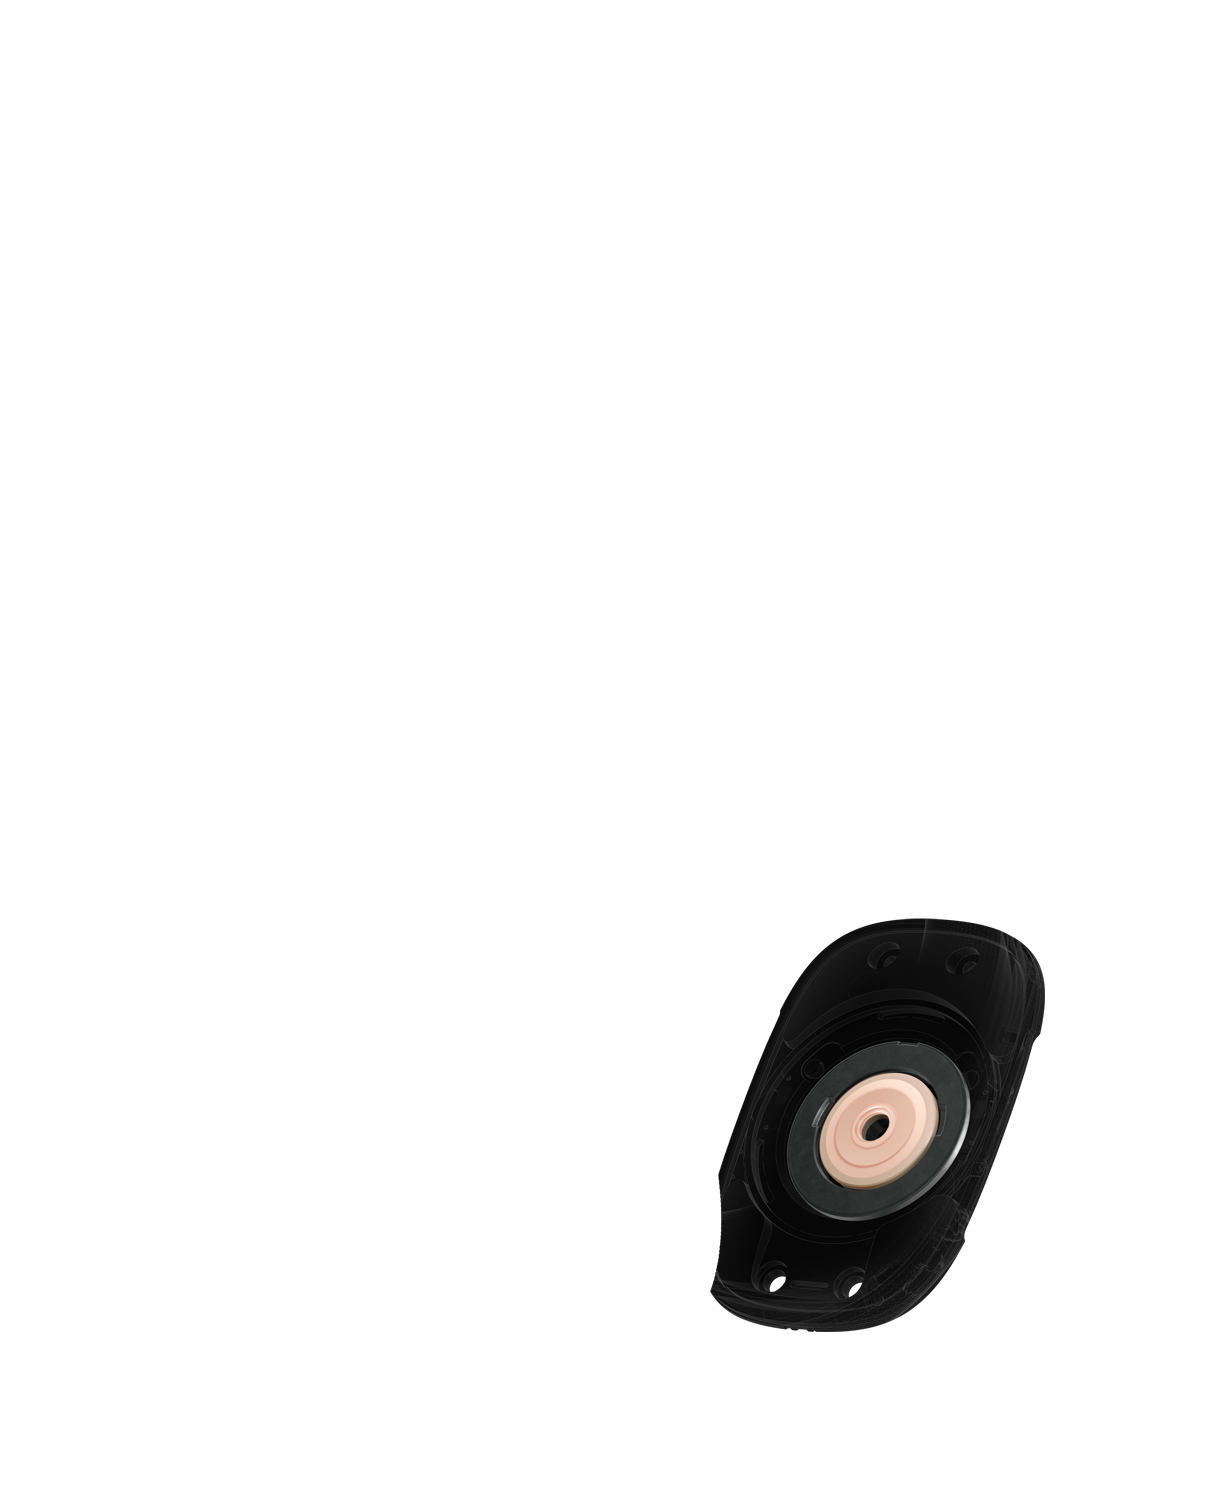 Зображення драйвера навушників ізсередини з кільцевим магнітом, який мінімізує спотворення.